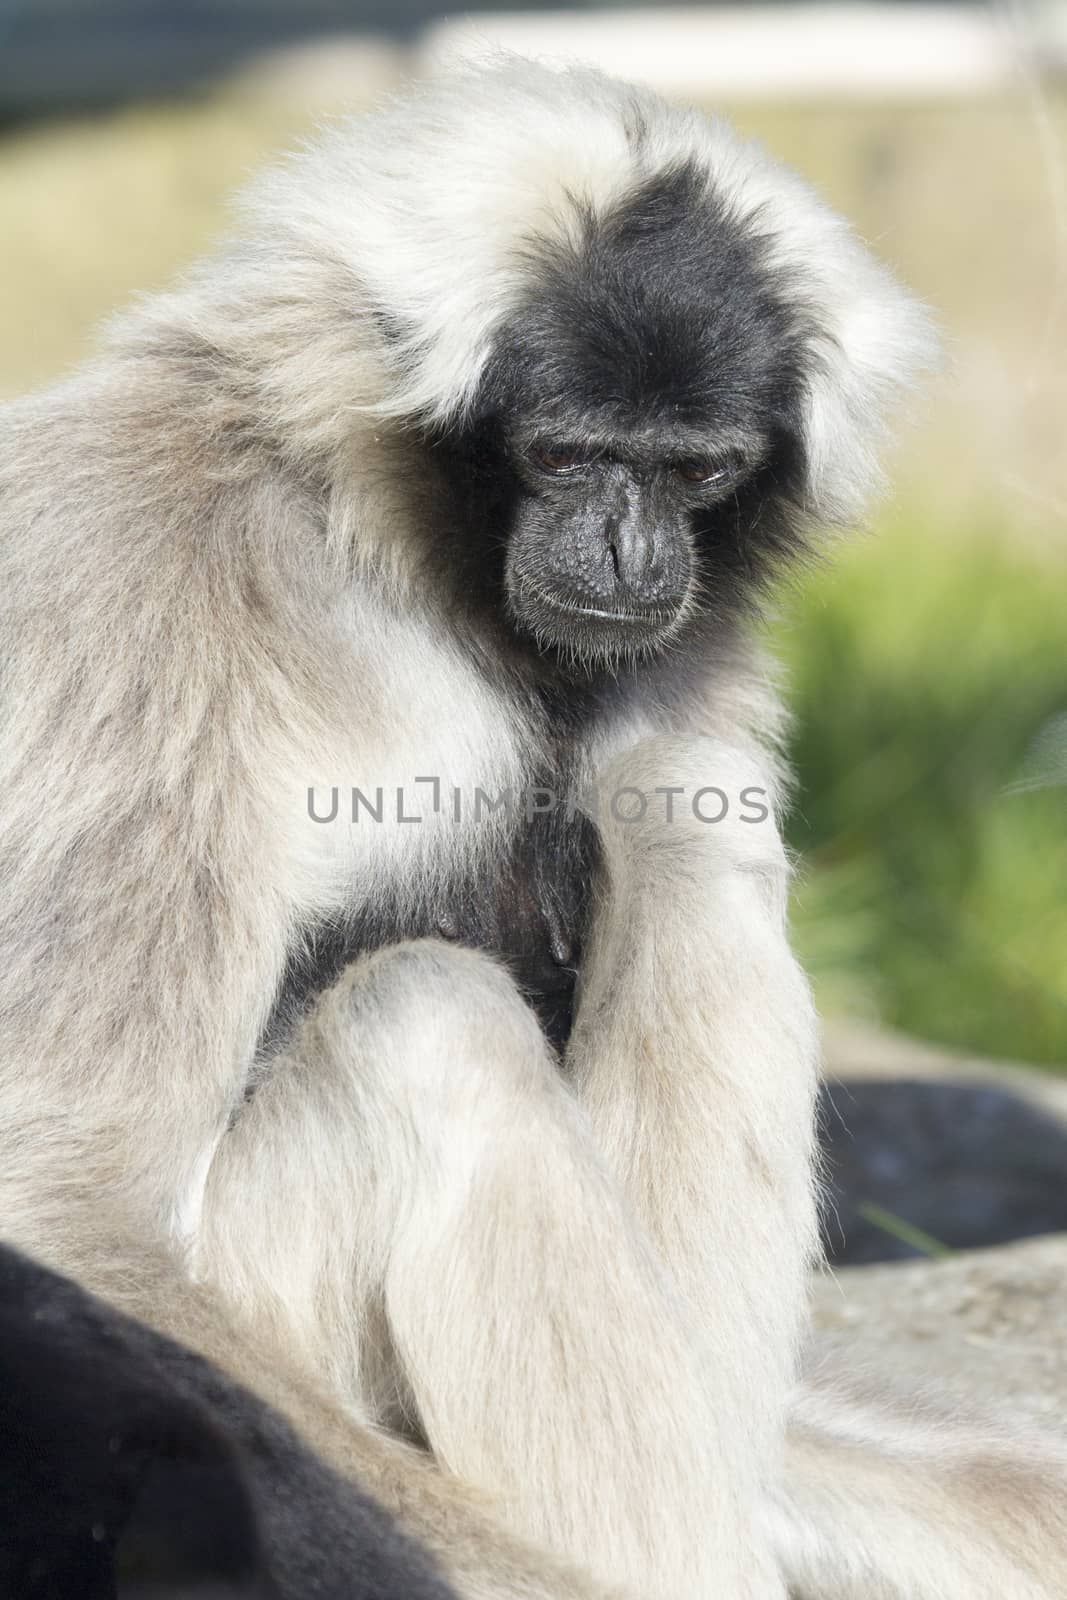 Gibbon by chris2766